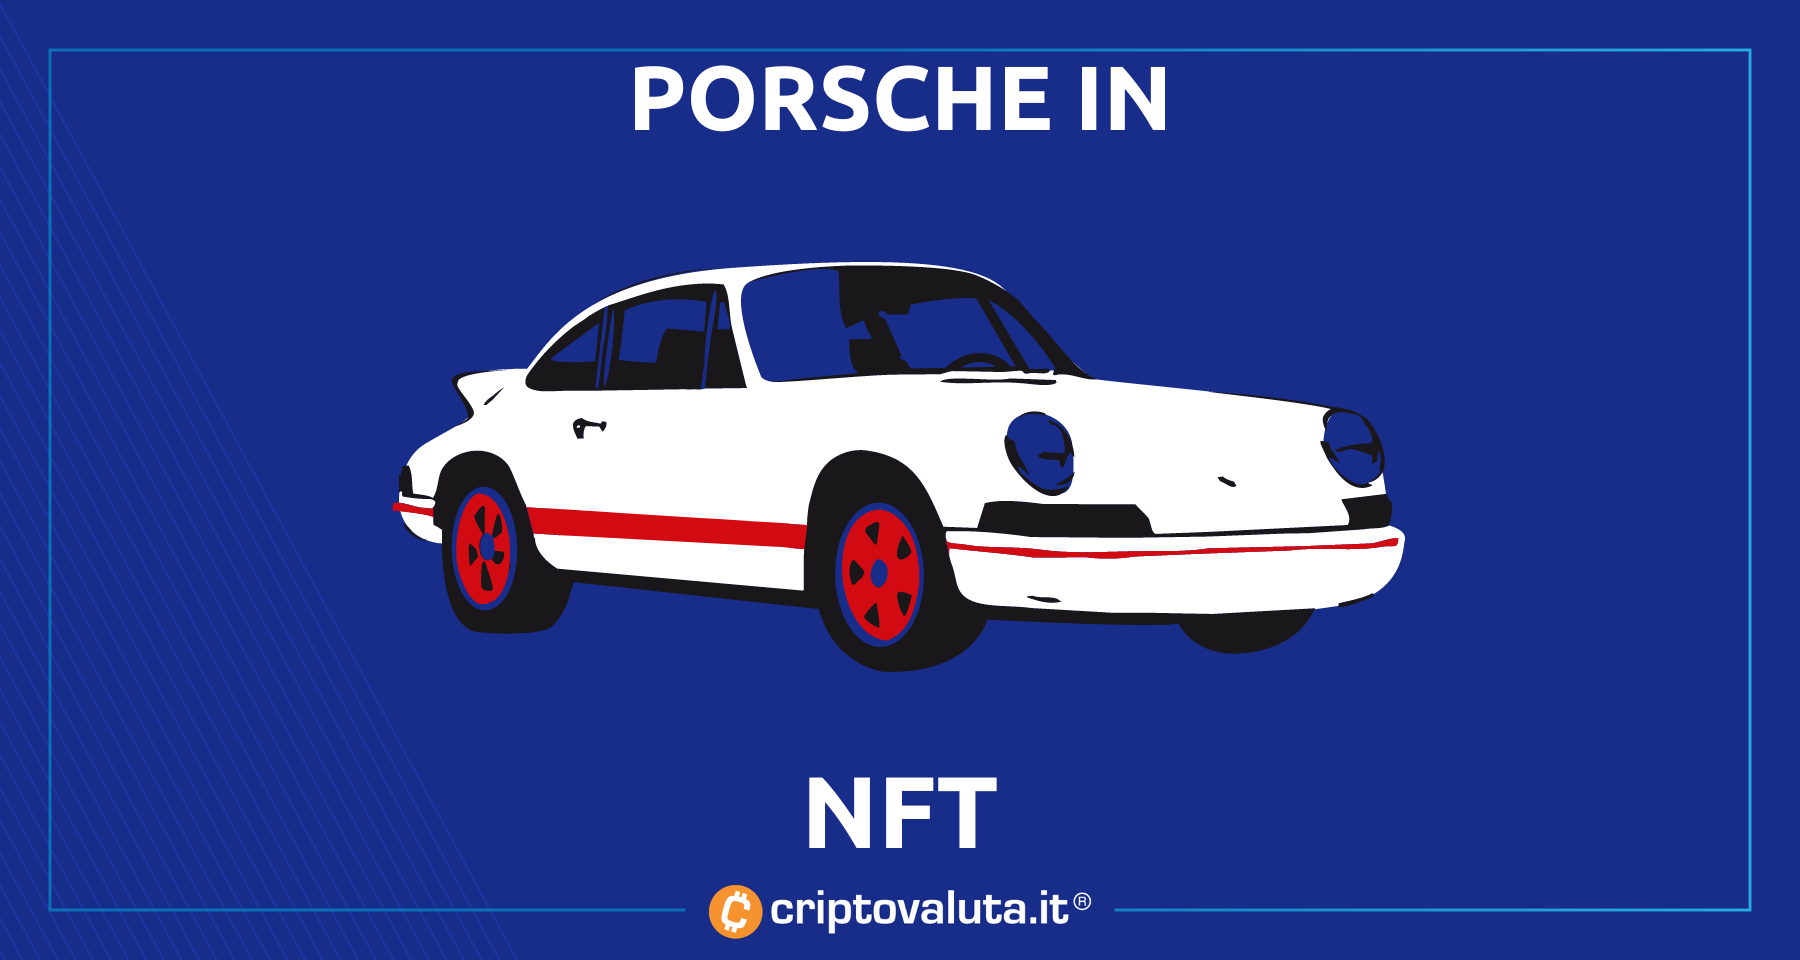 Porsche lancia i suoi NFT | Presentazione token per la 911 GT3 RS